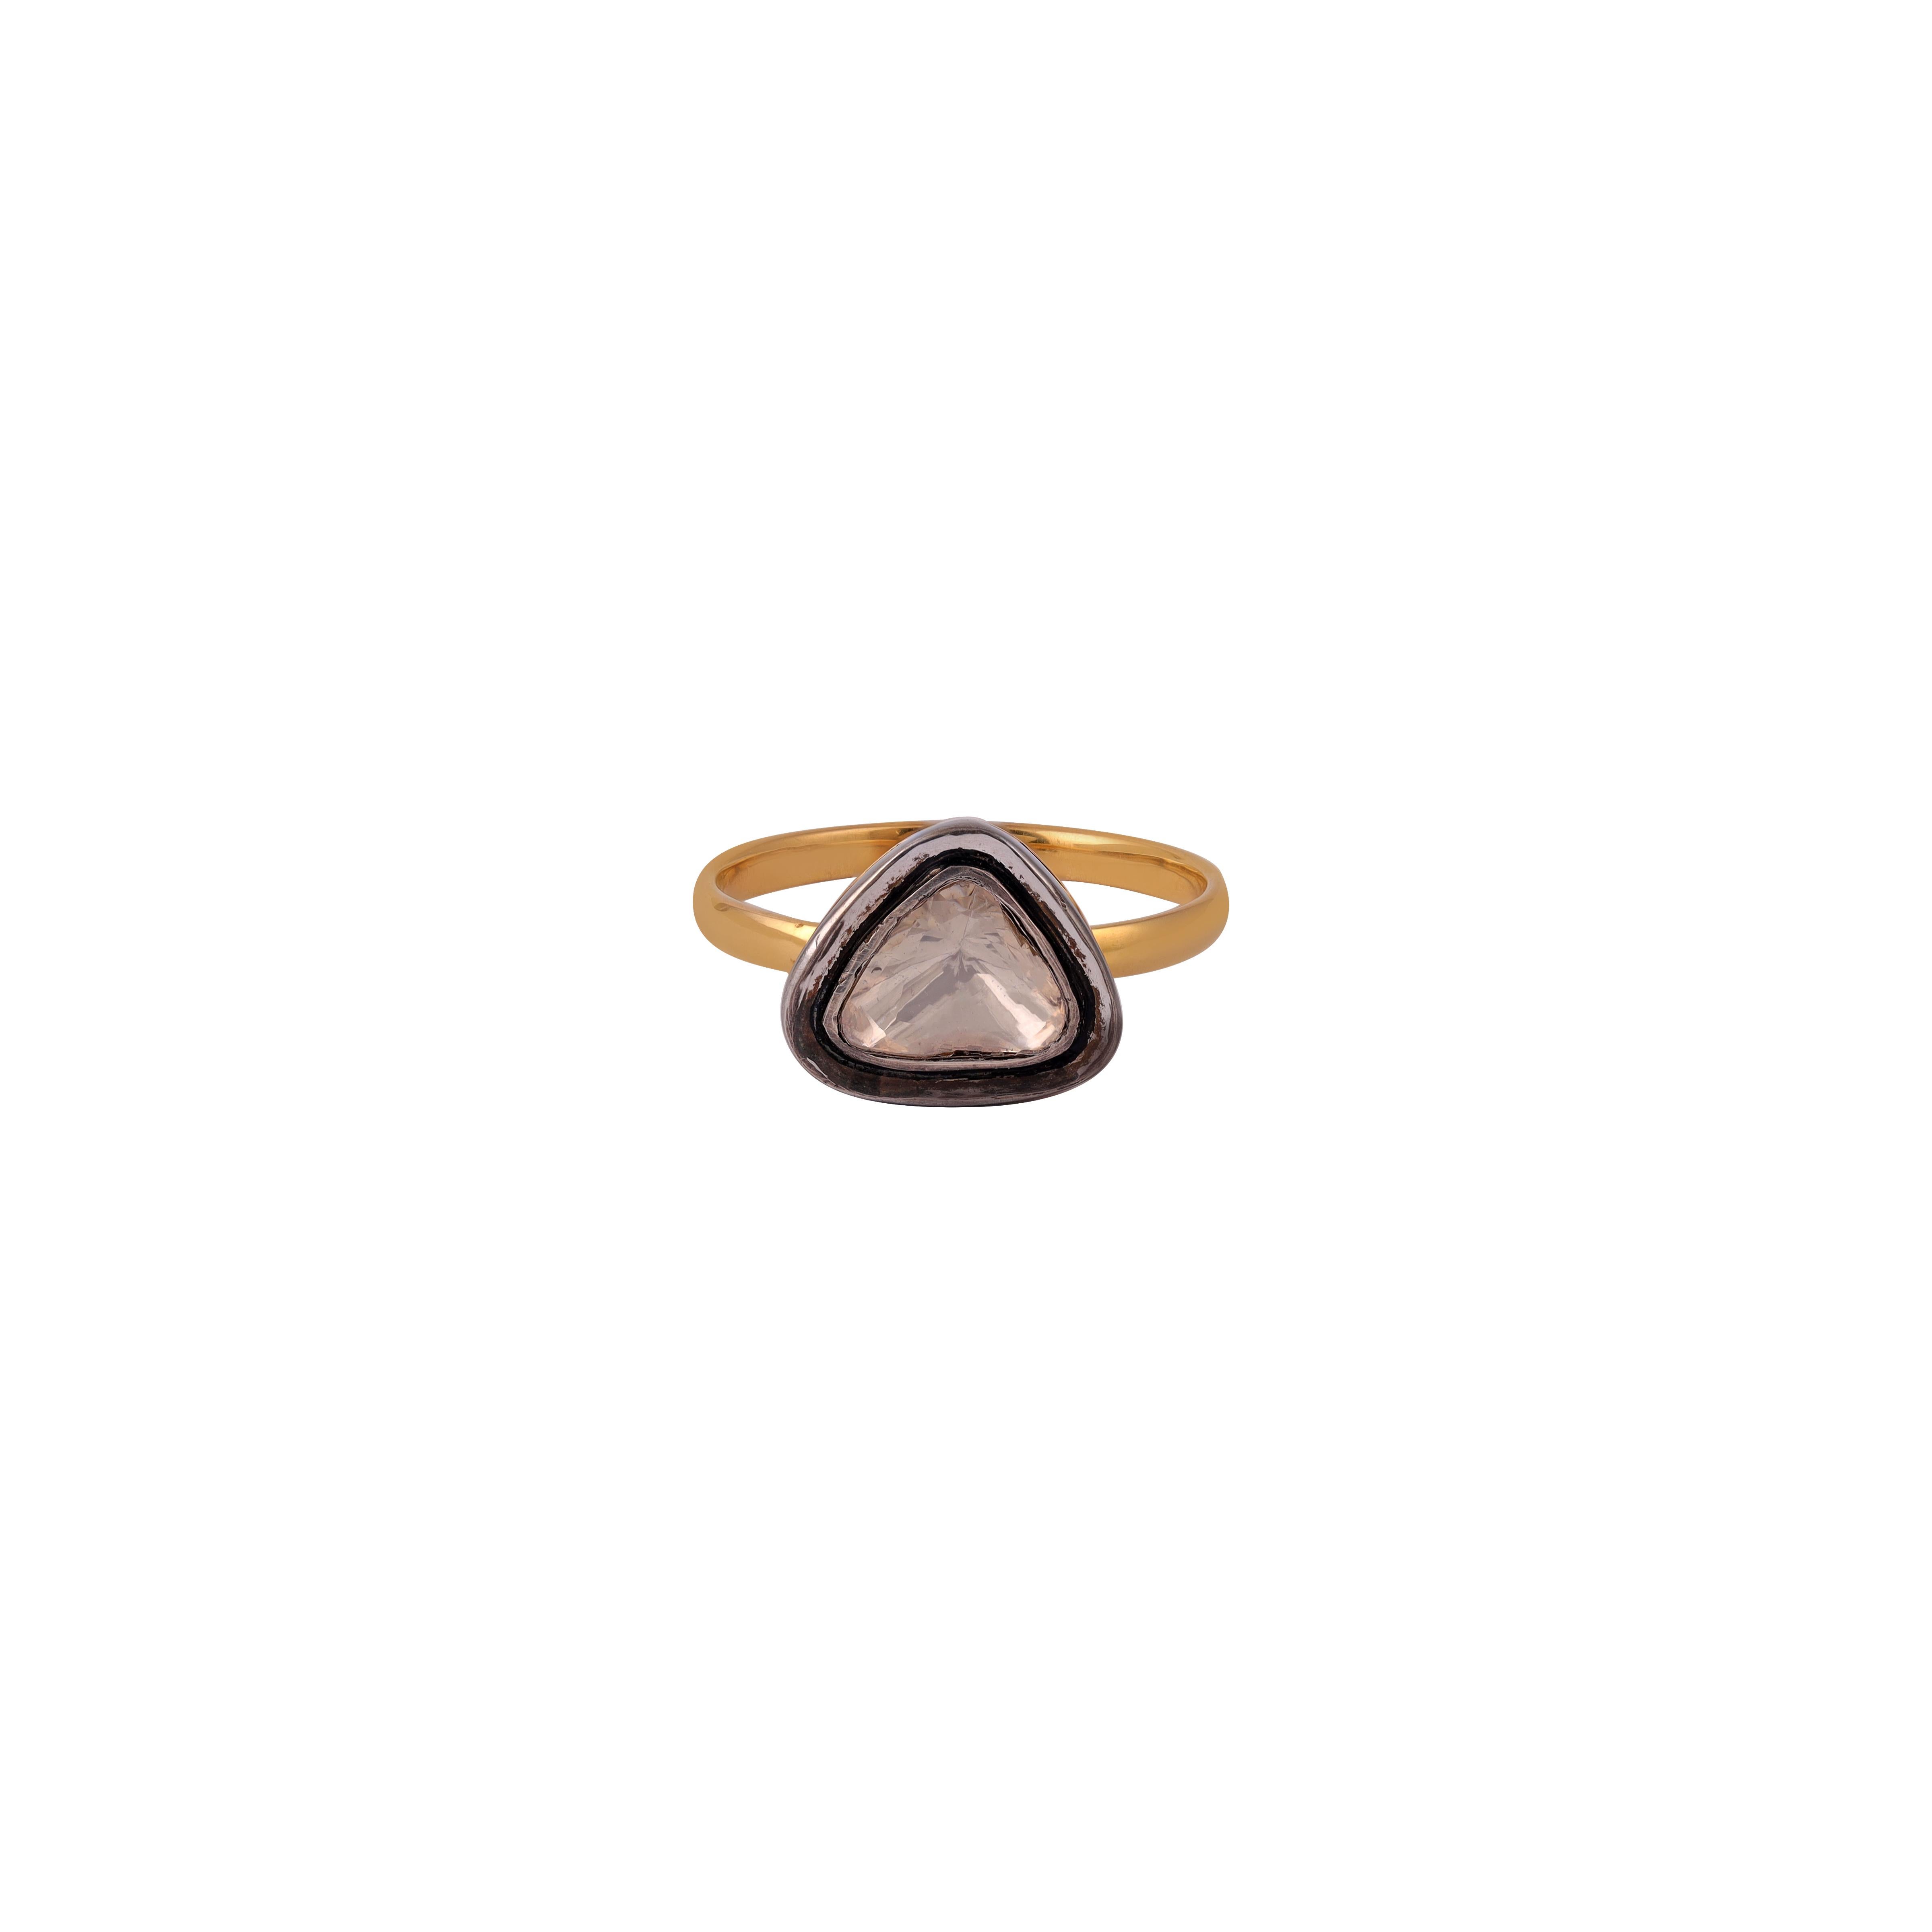 Magnifique diamant de 0.25 carat Polki / taille rose  Bague artisanale de style antique

Or 18 k  1,63 GMS
Argent        1.02
Services sur mesure
Le redimensionnement est possible.
Demande de personnalisation
